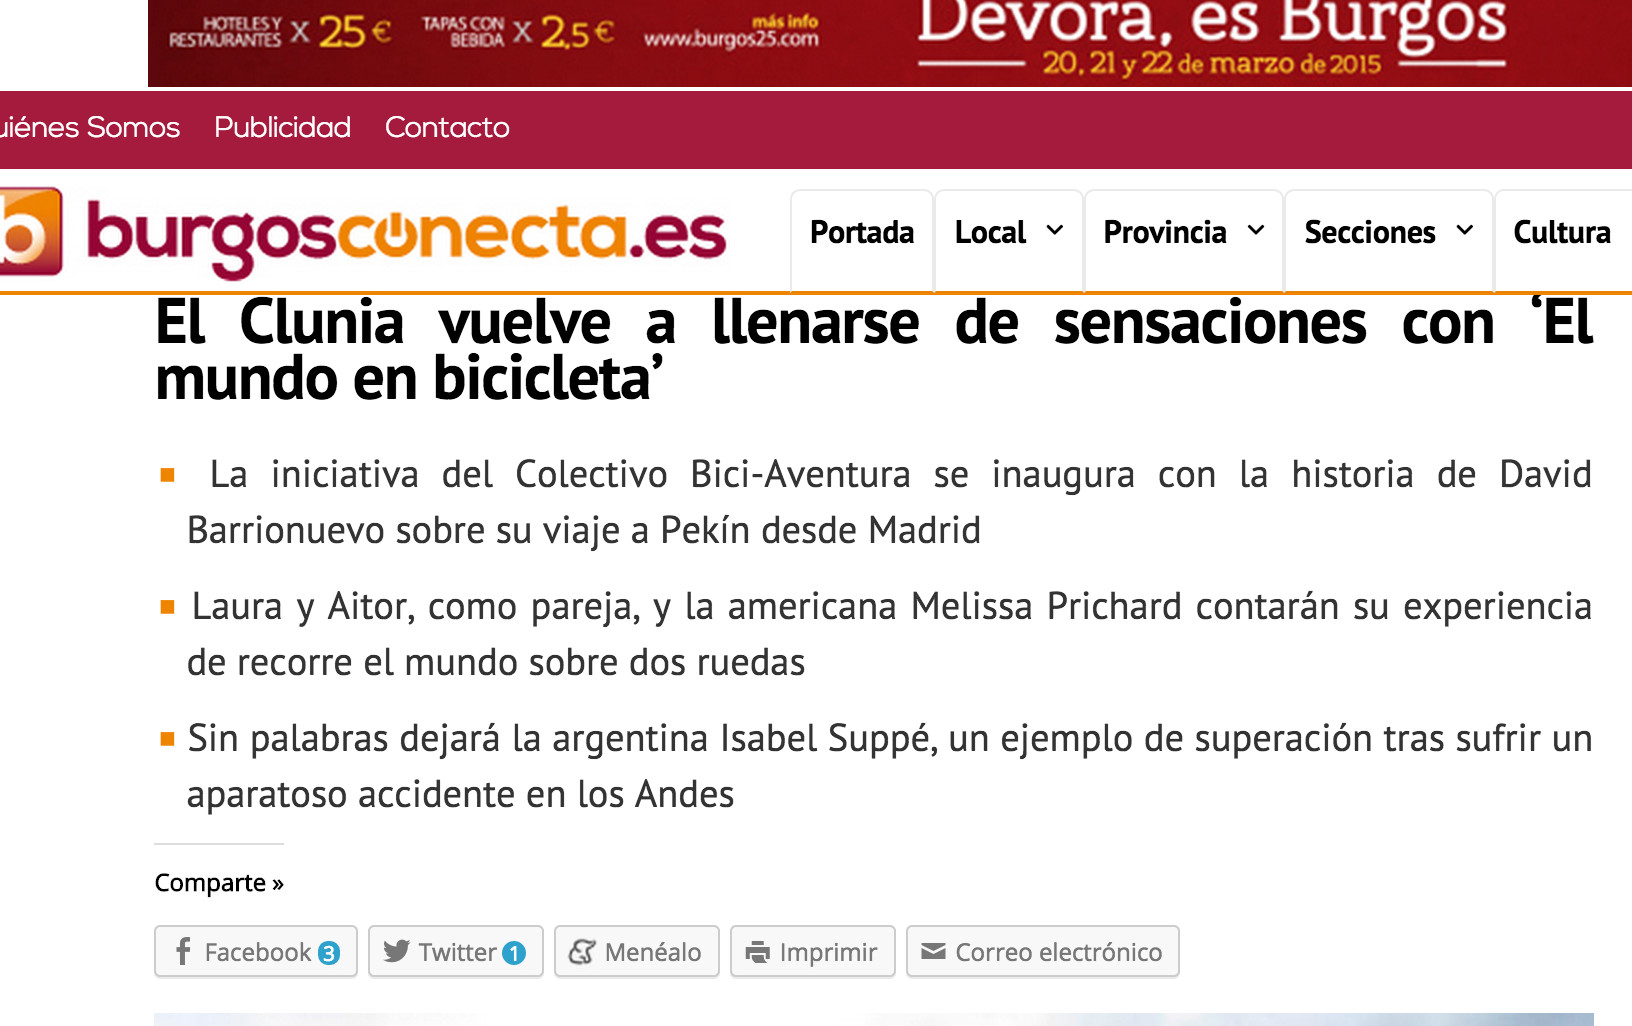 El Clunia vuelve a llenarse de sensaciones con El mundo en bicicleta Las noticias de Burgos según suceden BurgosConecta.es